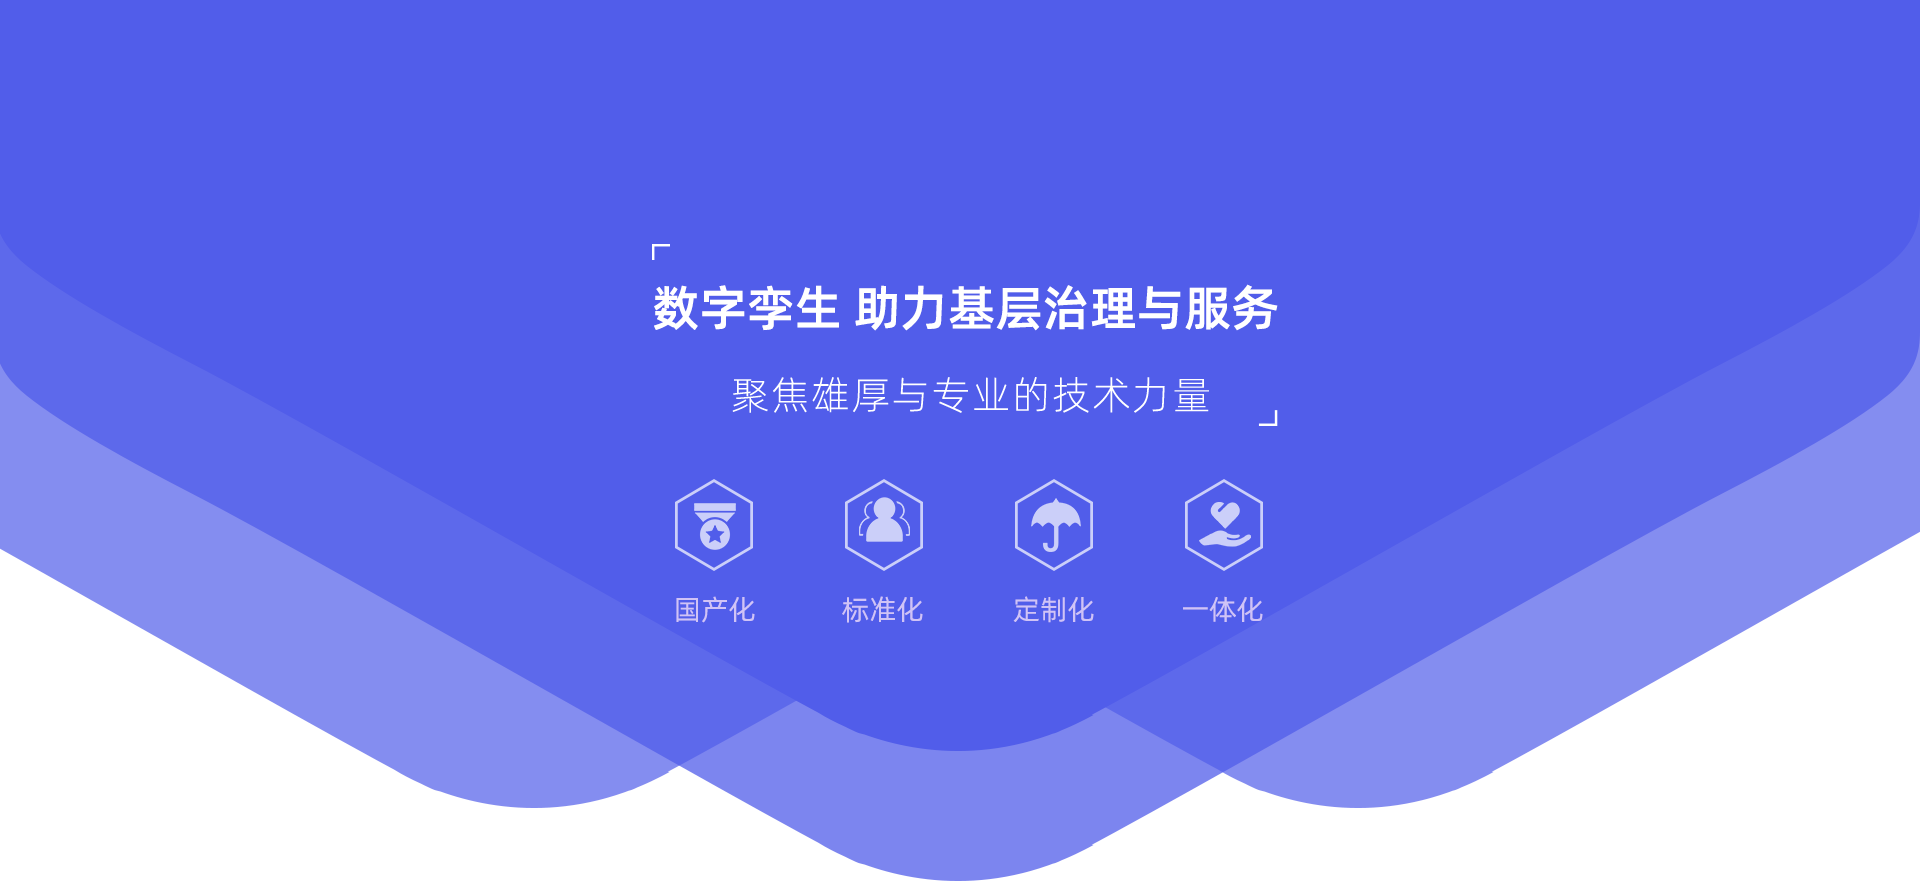 关于当前产品1317彩票购彩平台·(中国)官方网站的成功案例等相关图片